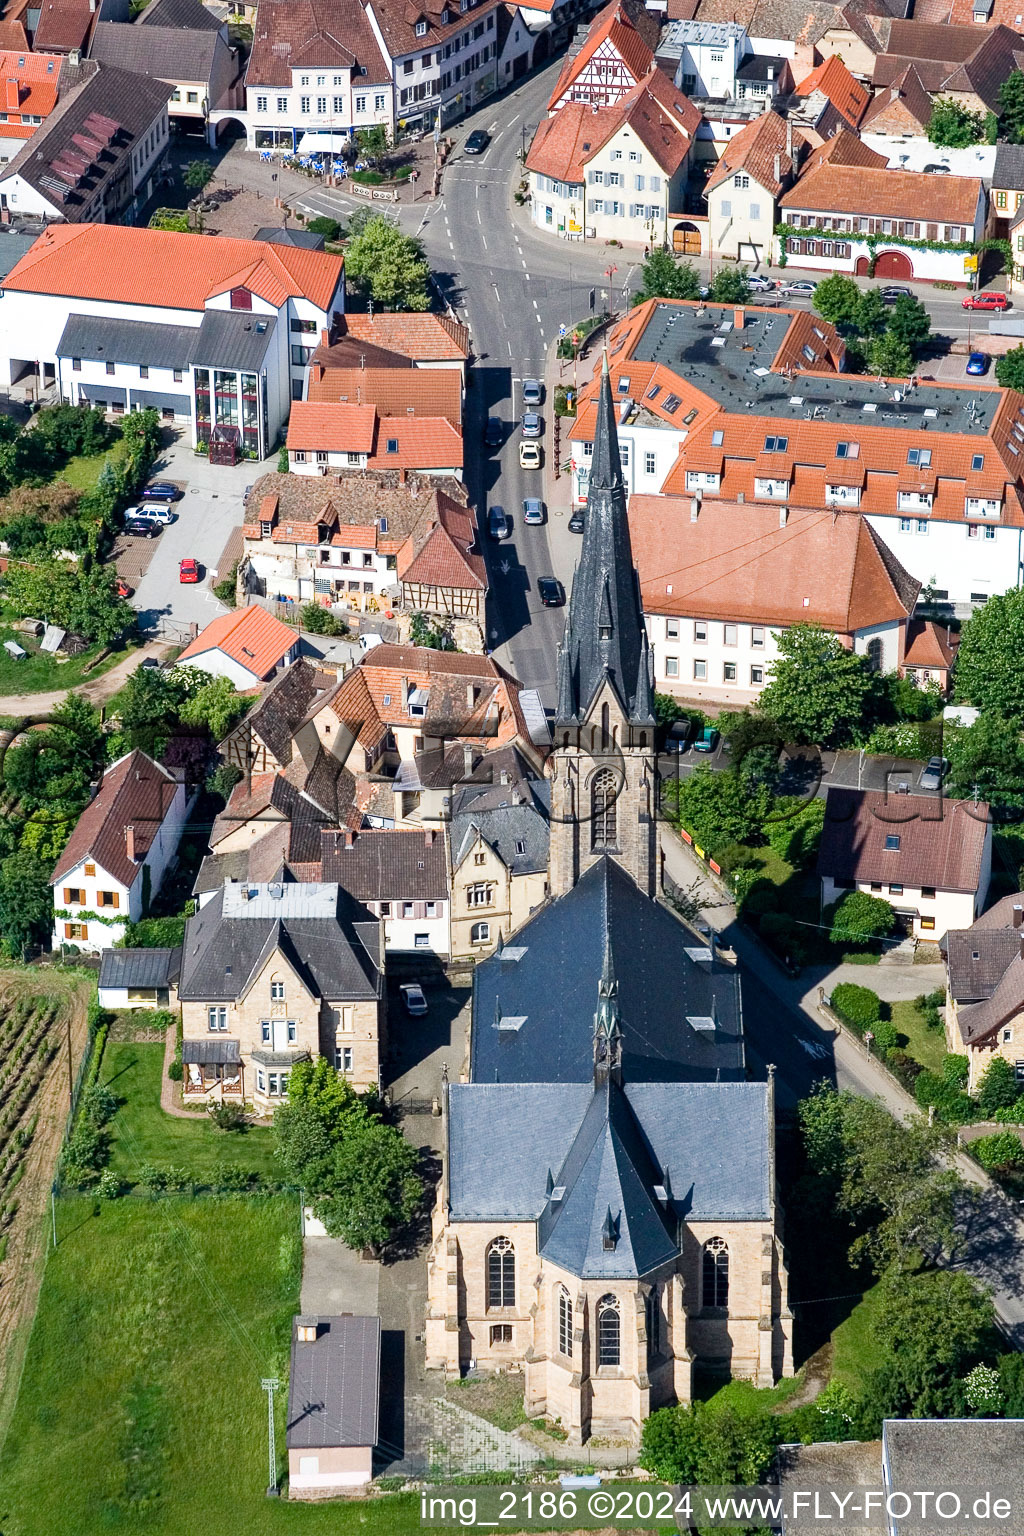 Vue aérienne de Bâtiment d'église au centre du village à Maikammer dans le département Rhénanie-Palatinat, Allemagne